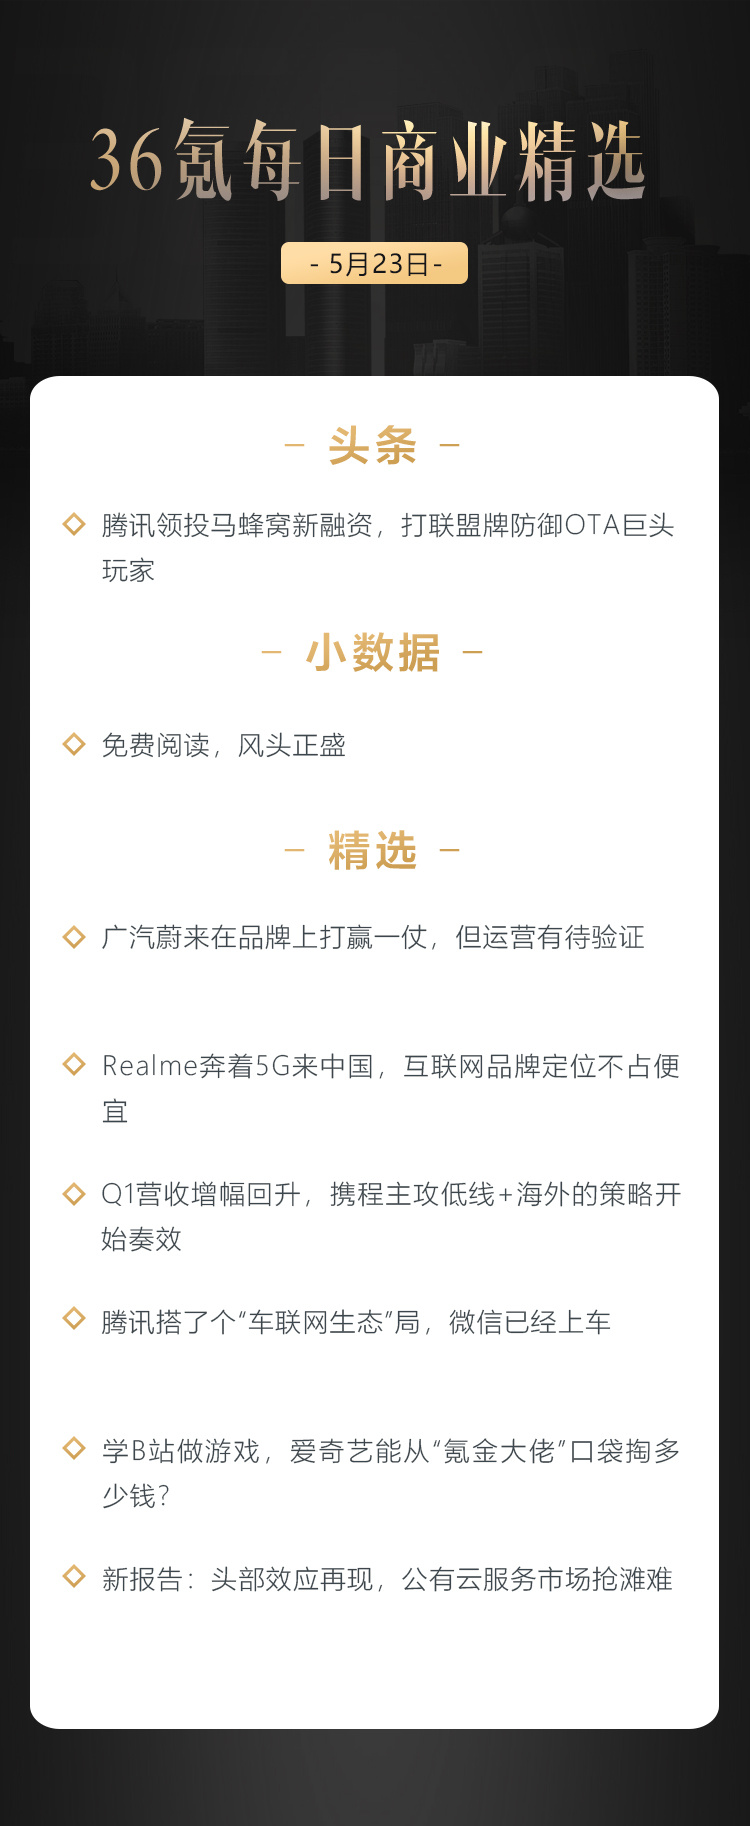 深度资讯 | Realme奔着5G来中国，互联网品牌定位不占便宜